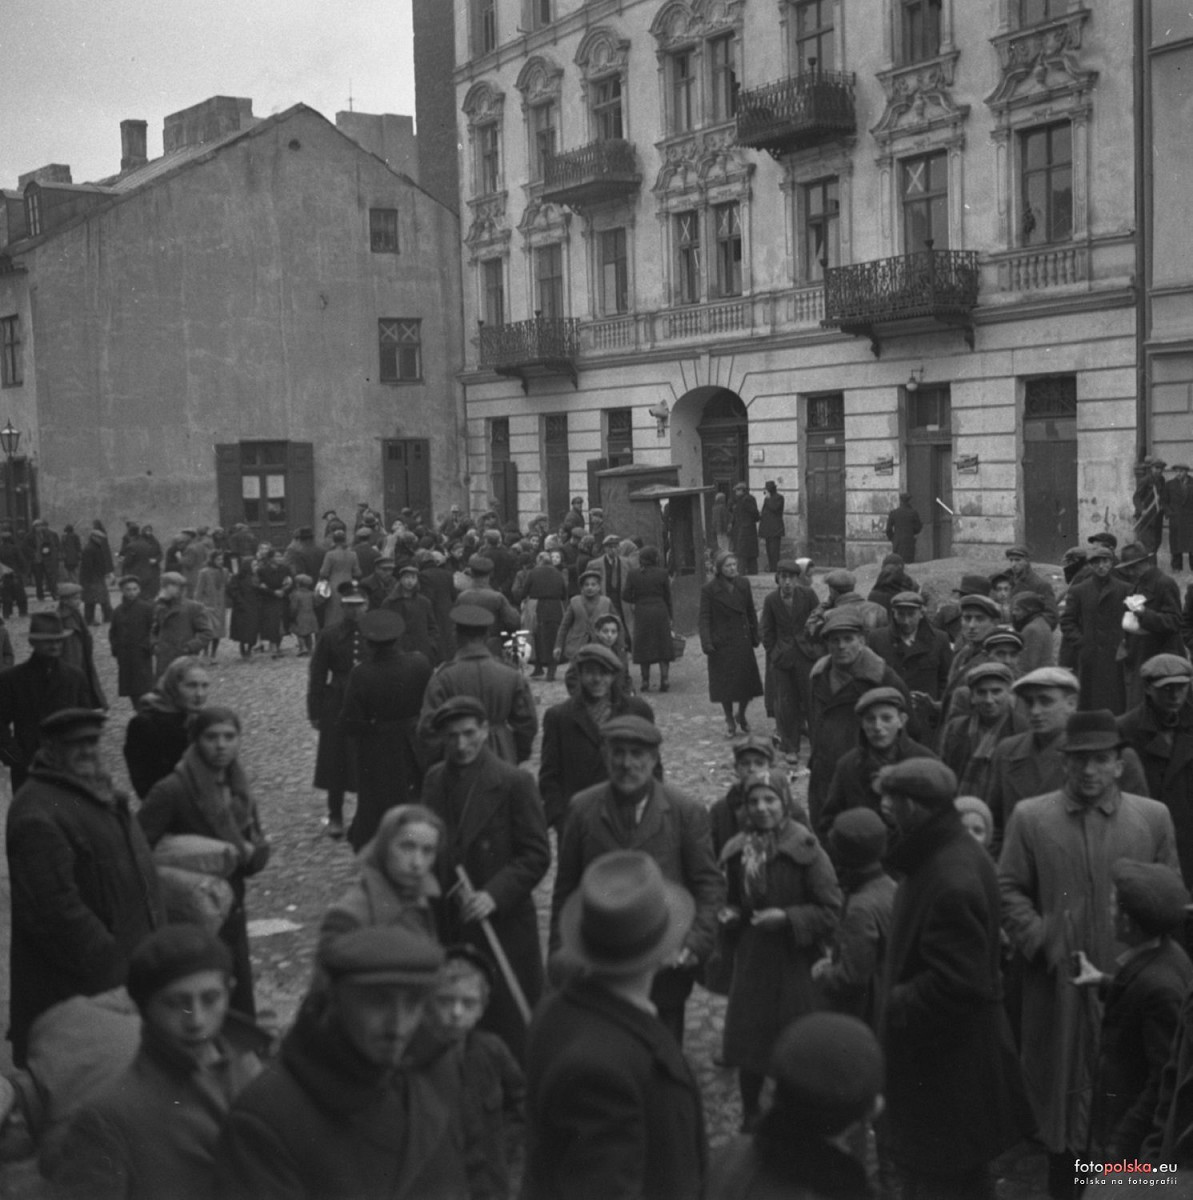 _en_Krochmalna_9__1939_-_Archiwum_Pa_stwowe_w_Warszawie__fotopolska.eu.jpg